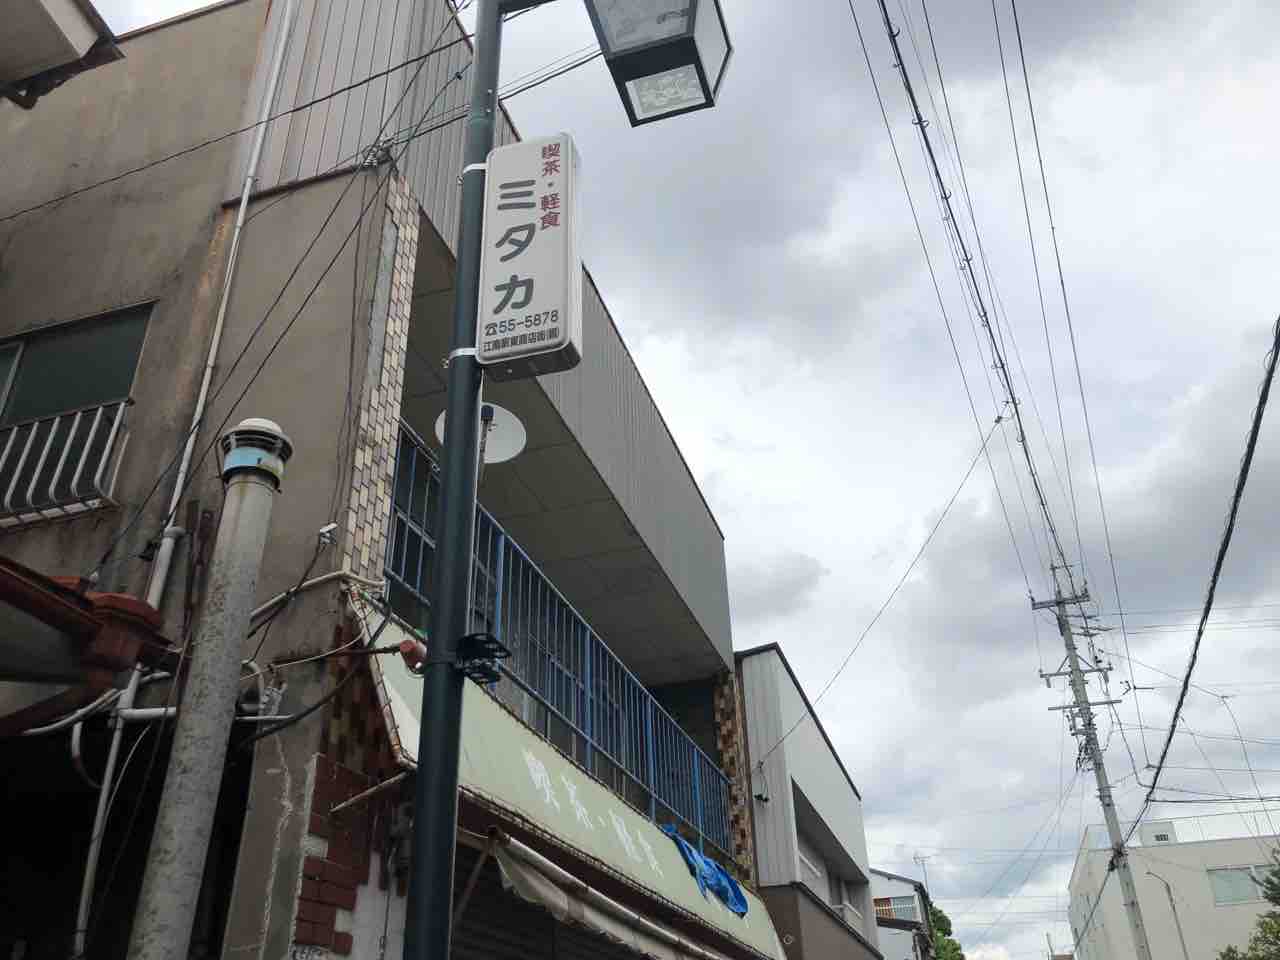 『喫茶・軽食 ミタカ』店舗看板